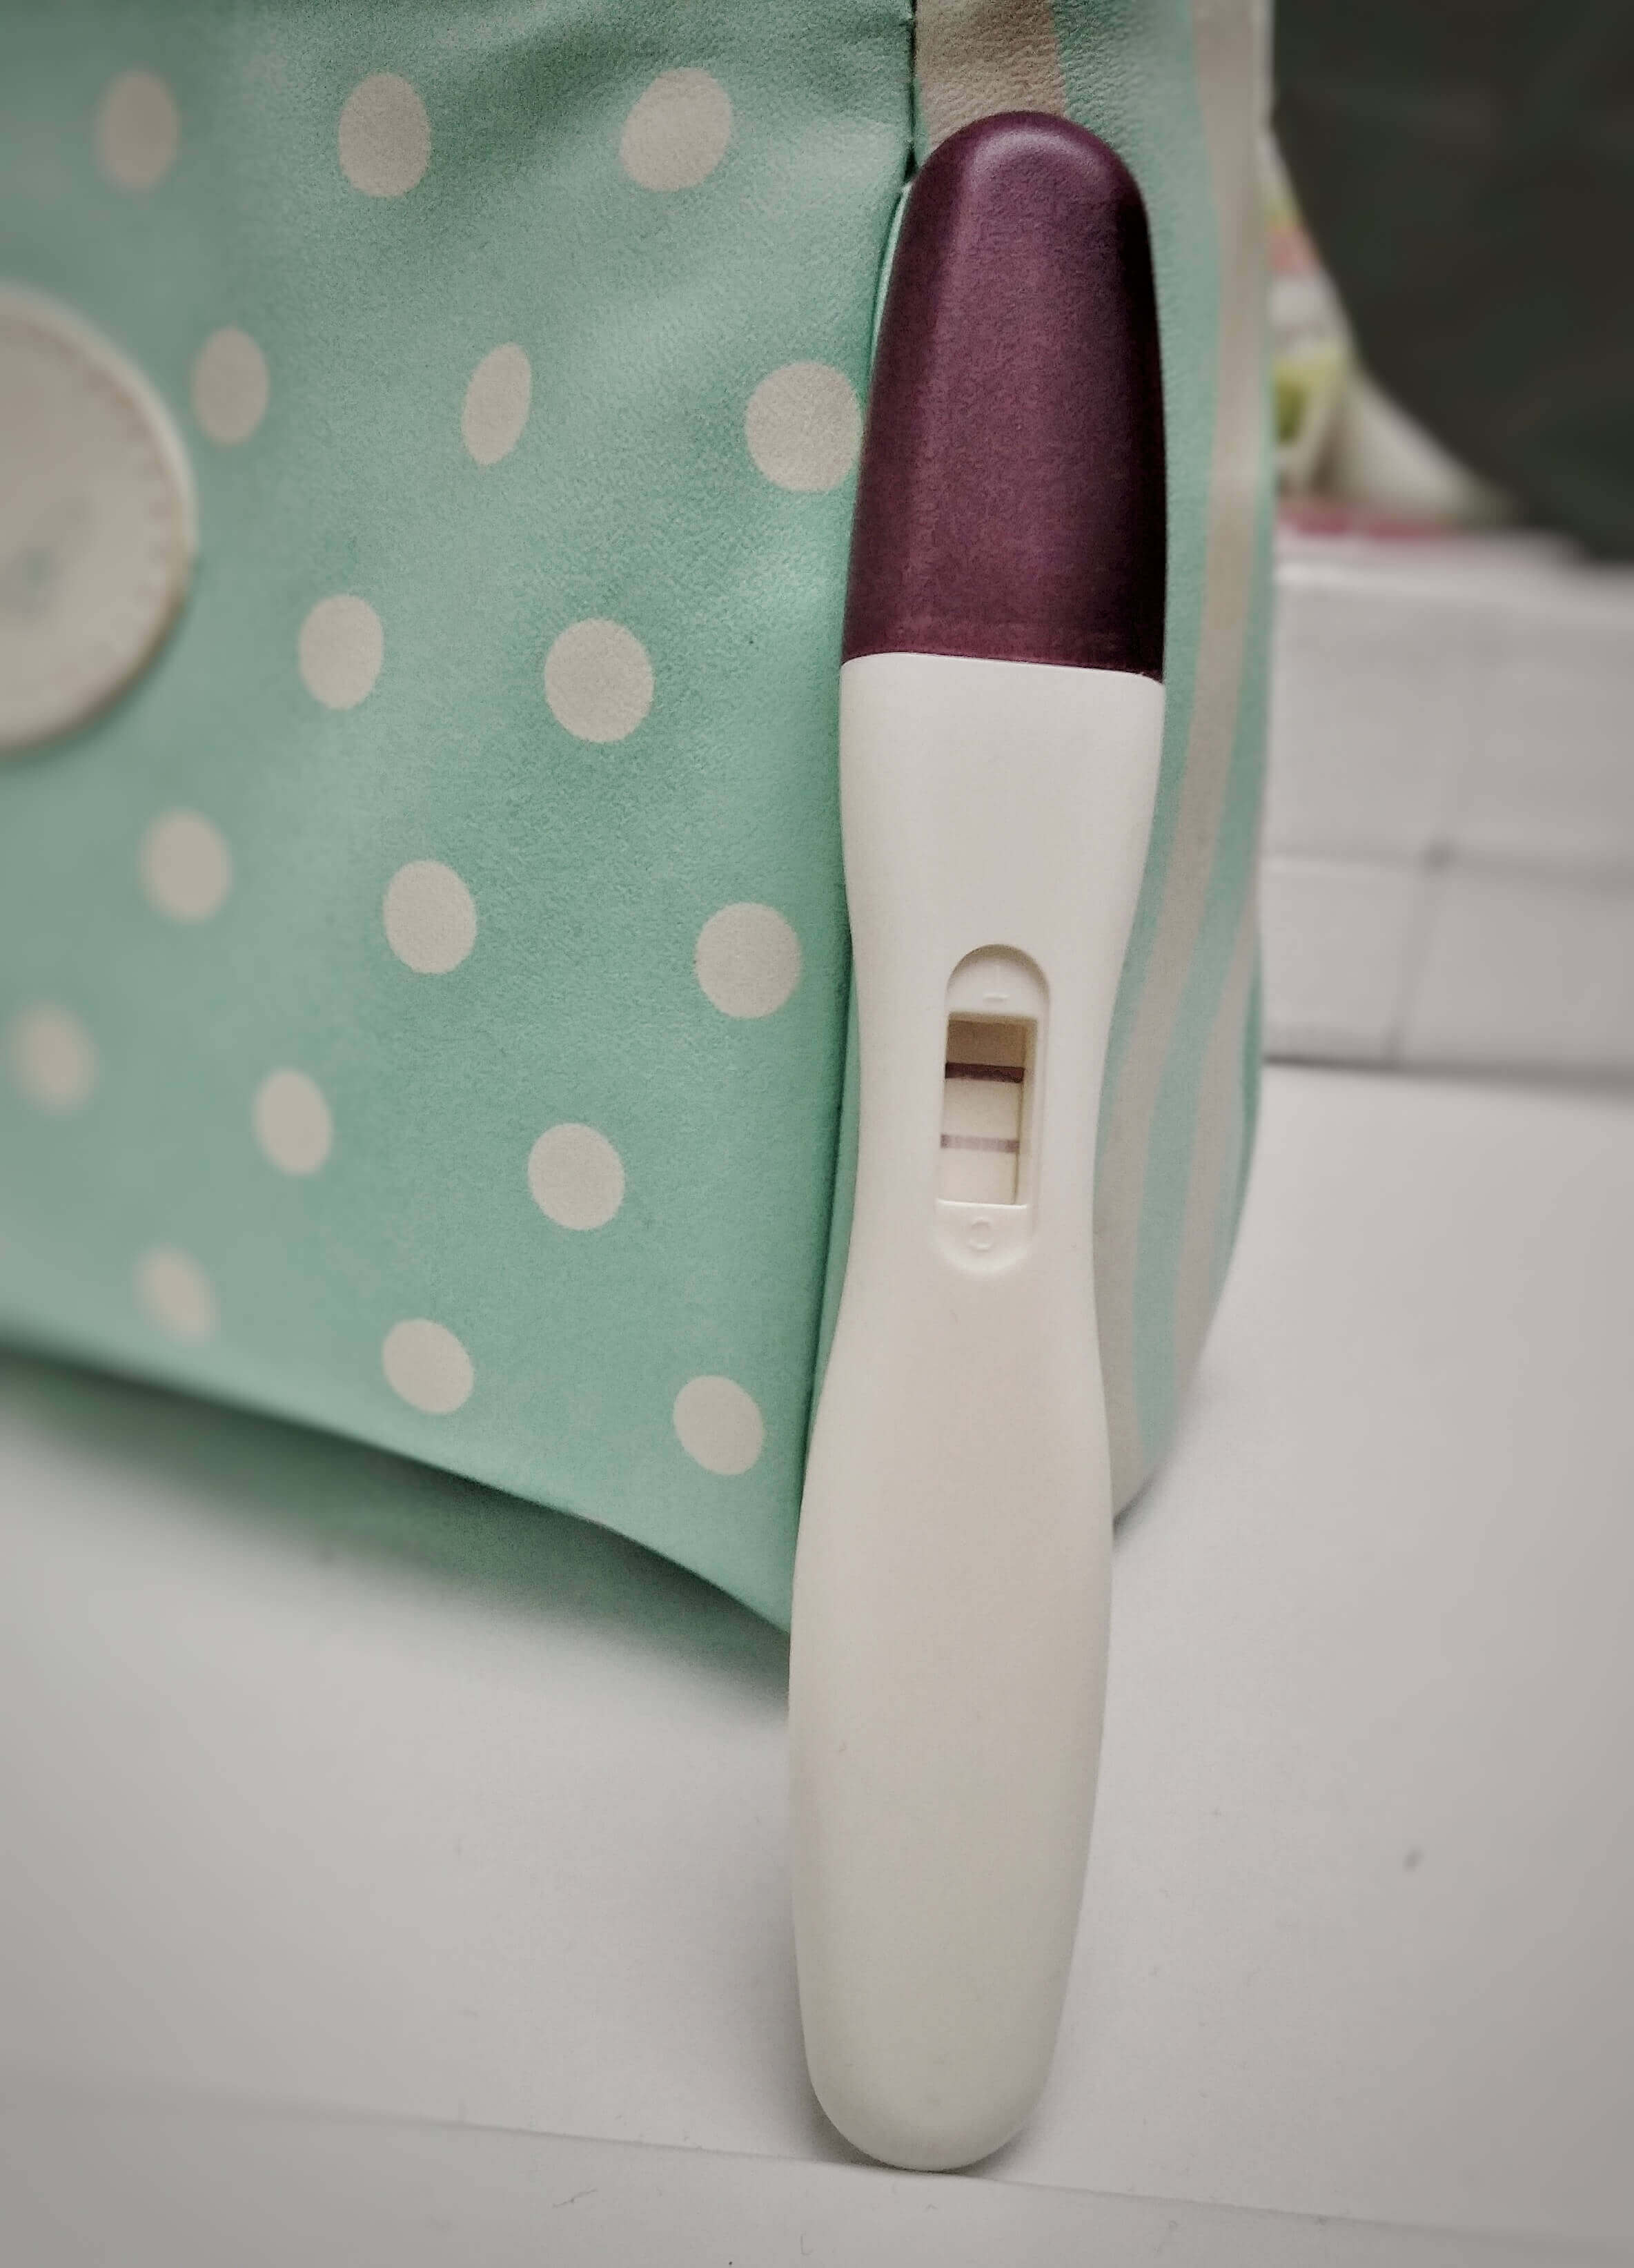 Schwangerschaftstest einnistungsblutung Einnistungsblutung schwangerschaftstest